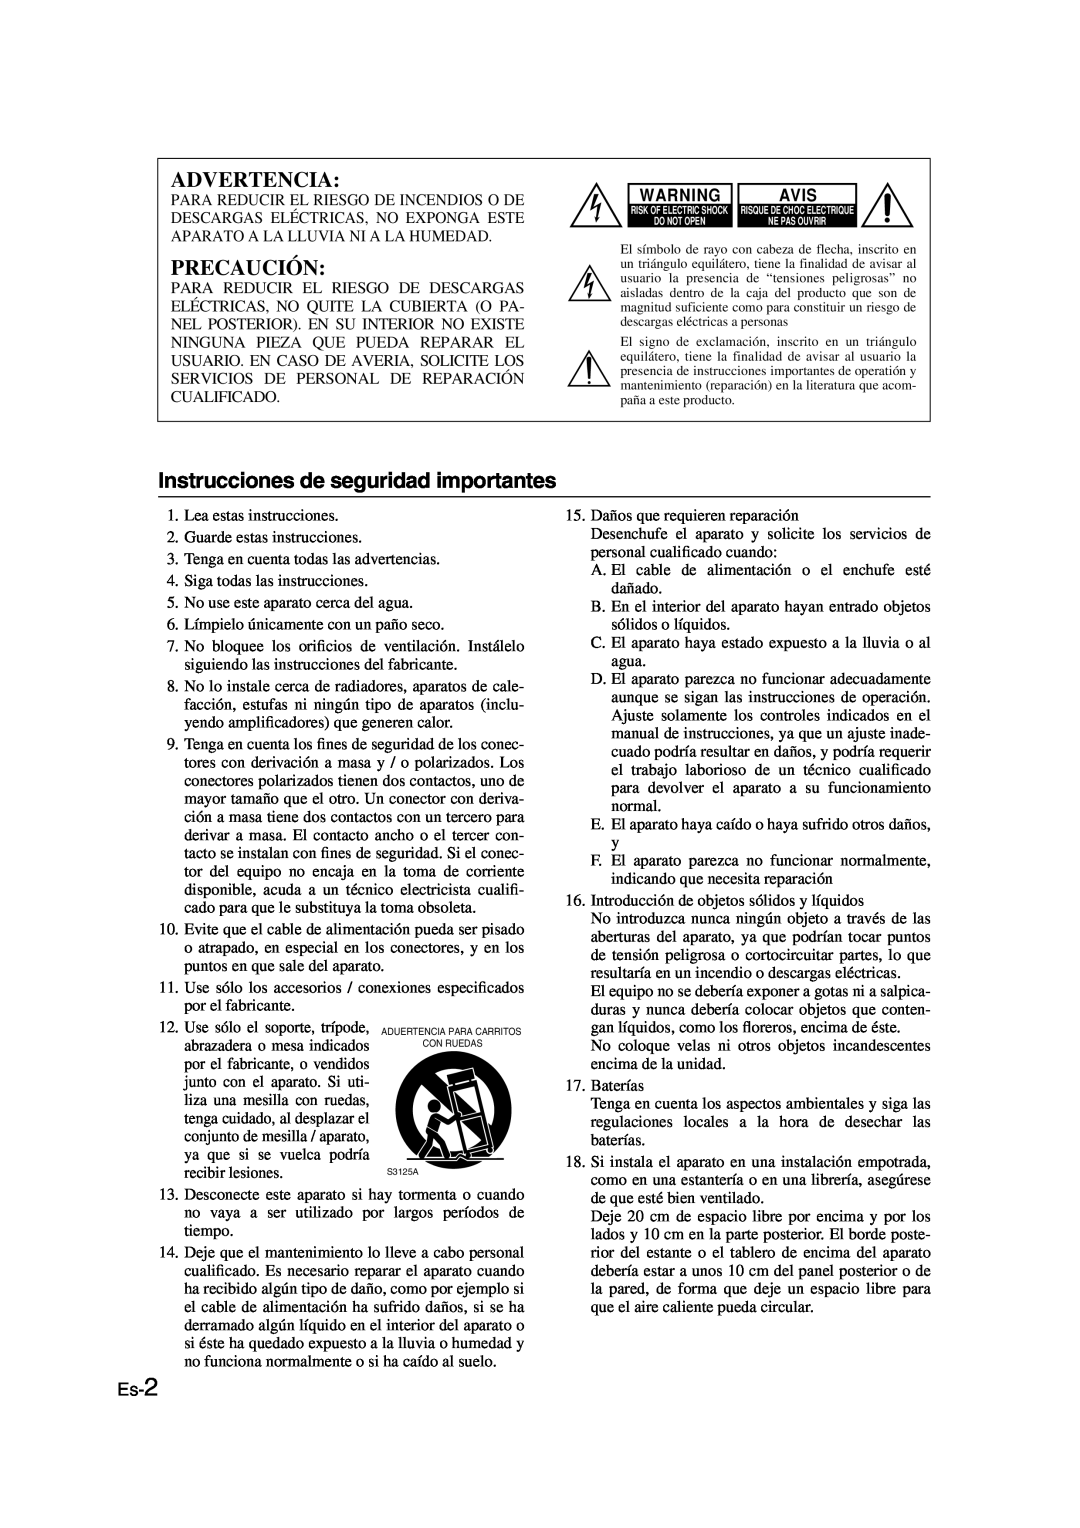 Onkyo SKS-HT530 instruction manual Advertencia, Precaución, Instrucciones de seguridad importantes, Es-2, Avis 